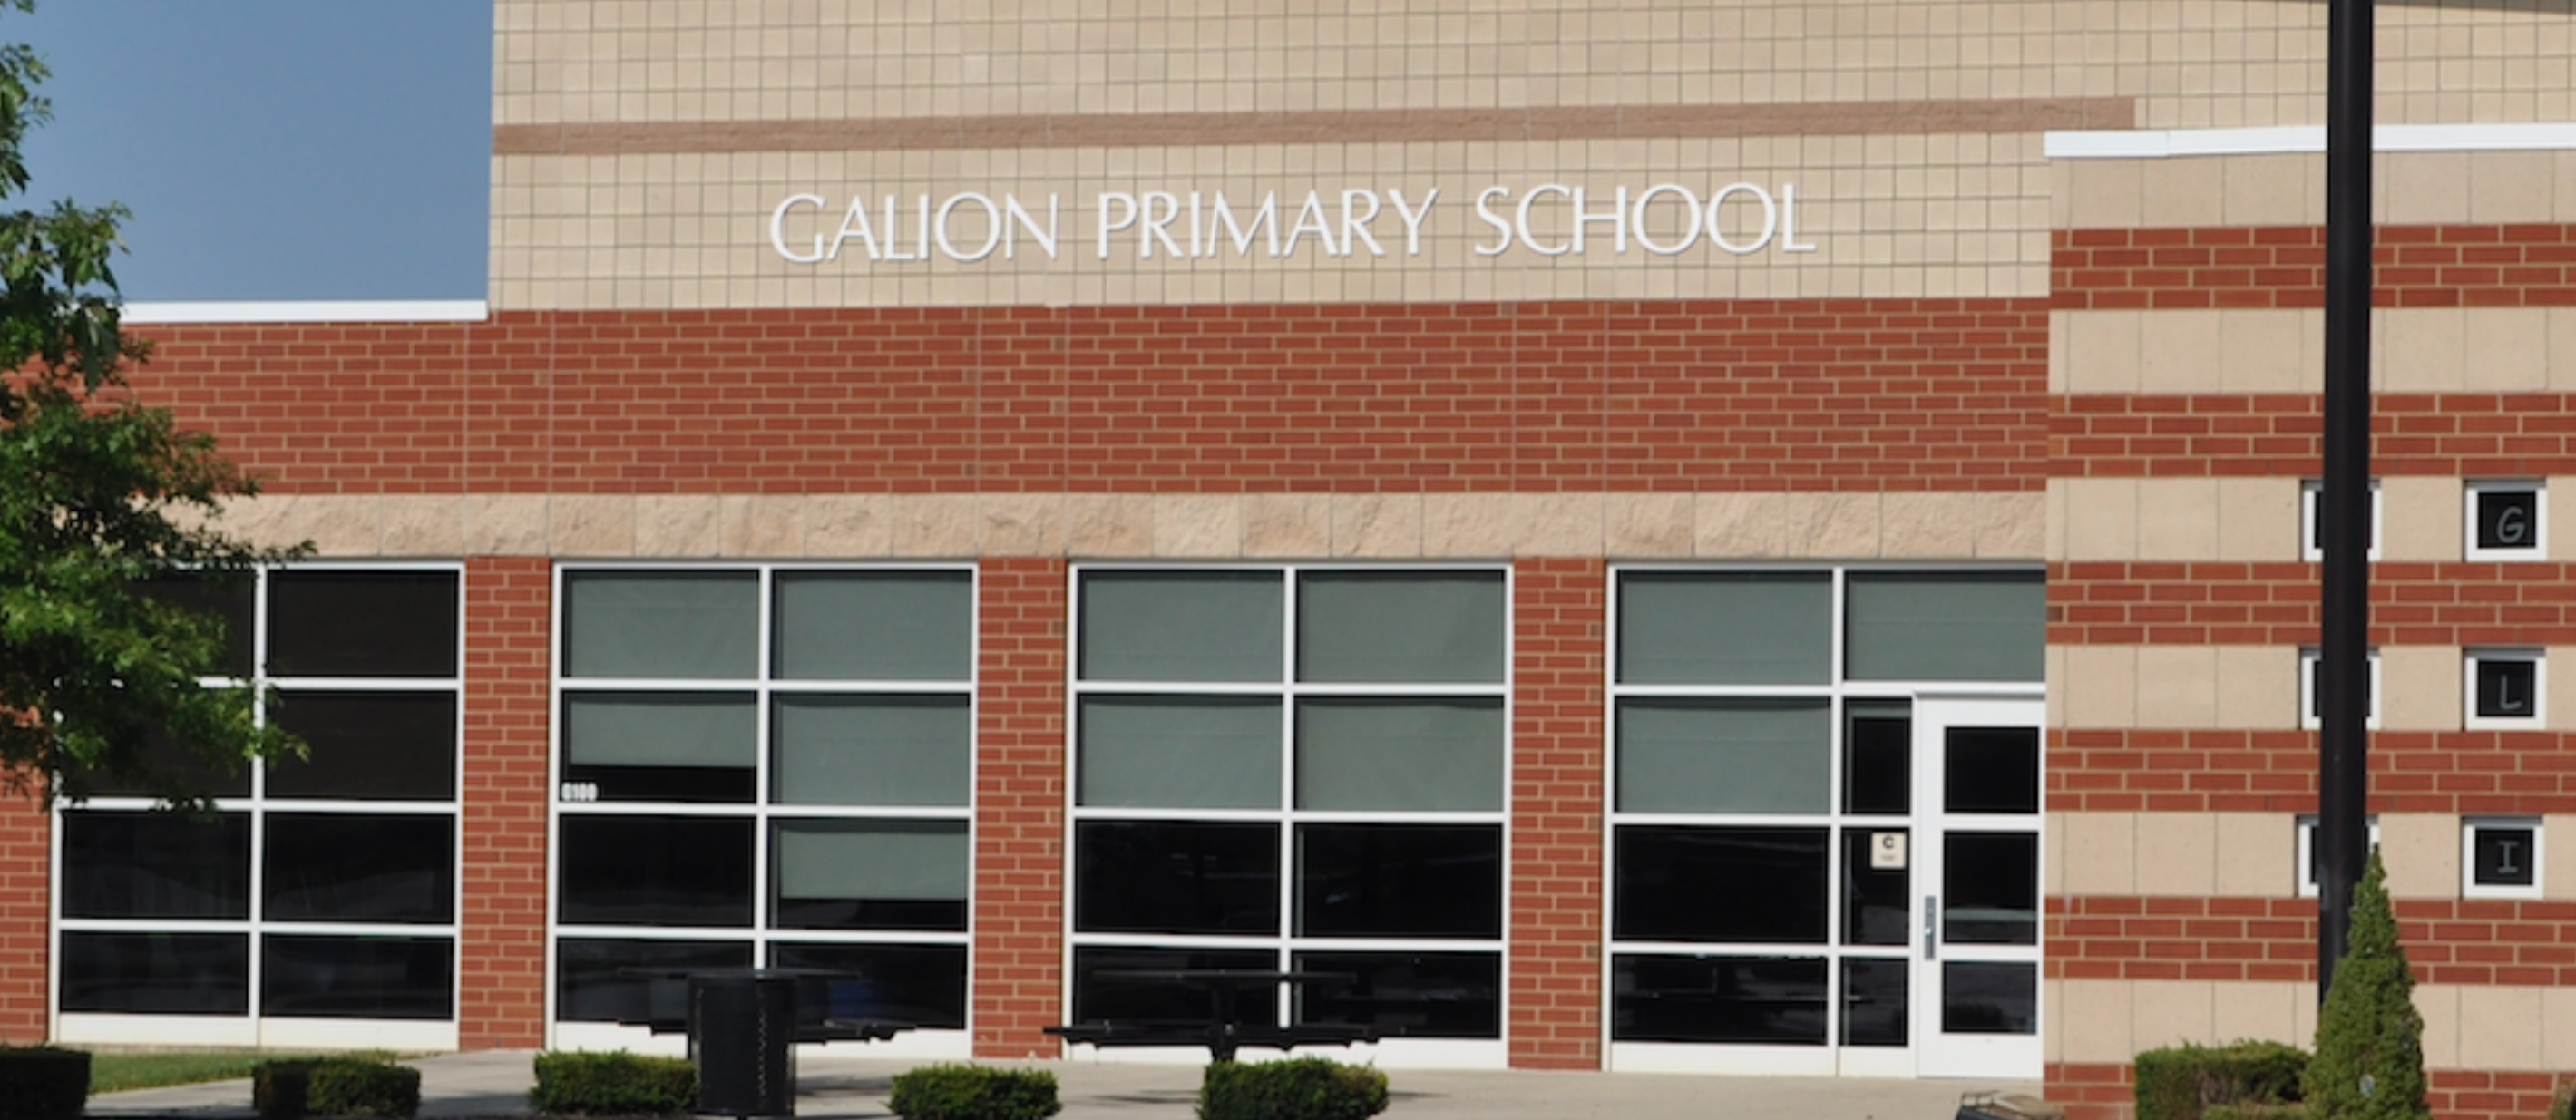 Galion Primary School Building